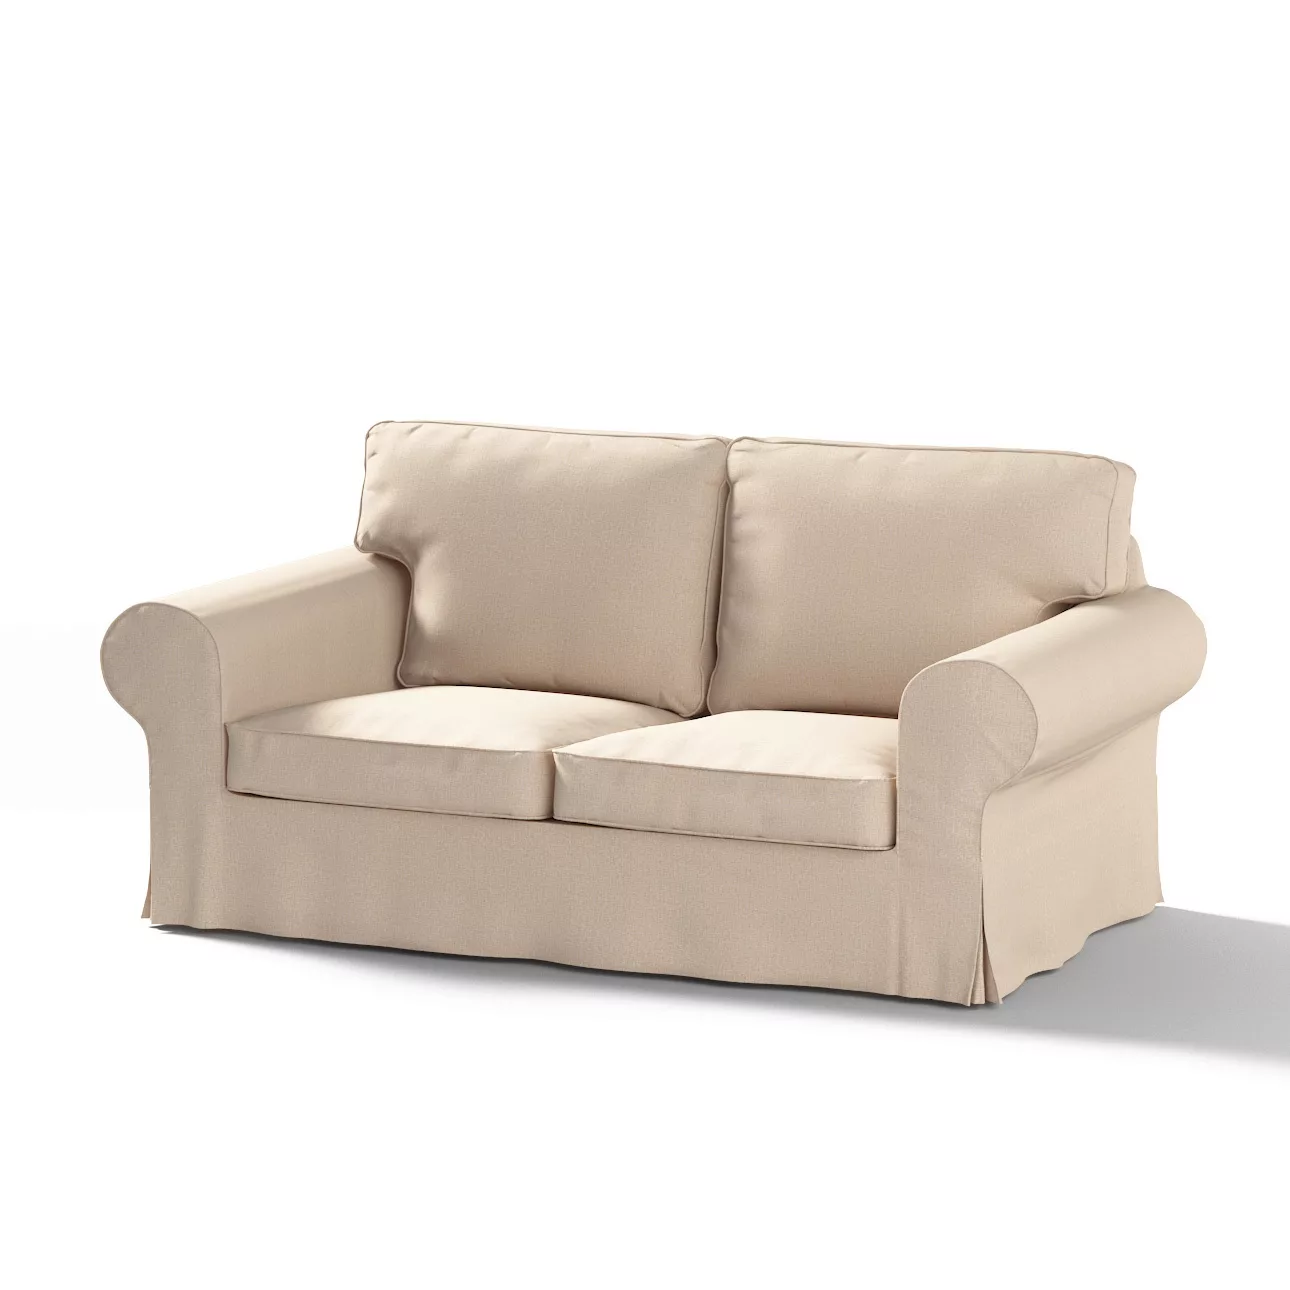 Bezug für Ektorp 2-Sitzer Schlafsofa NEUES Modell, beige, Sofabezug für  Ek günstig online kaufen